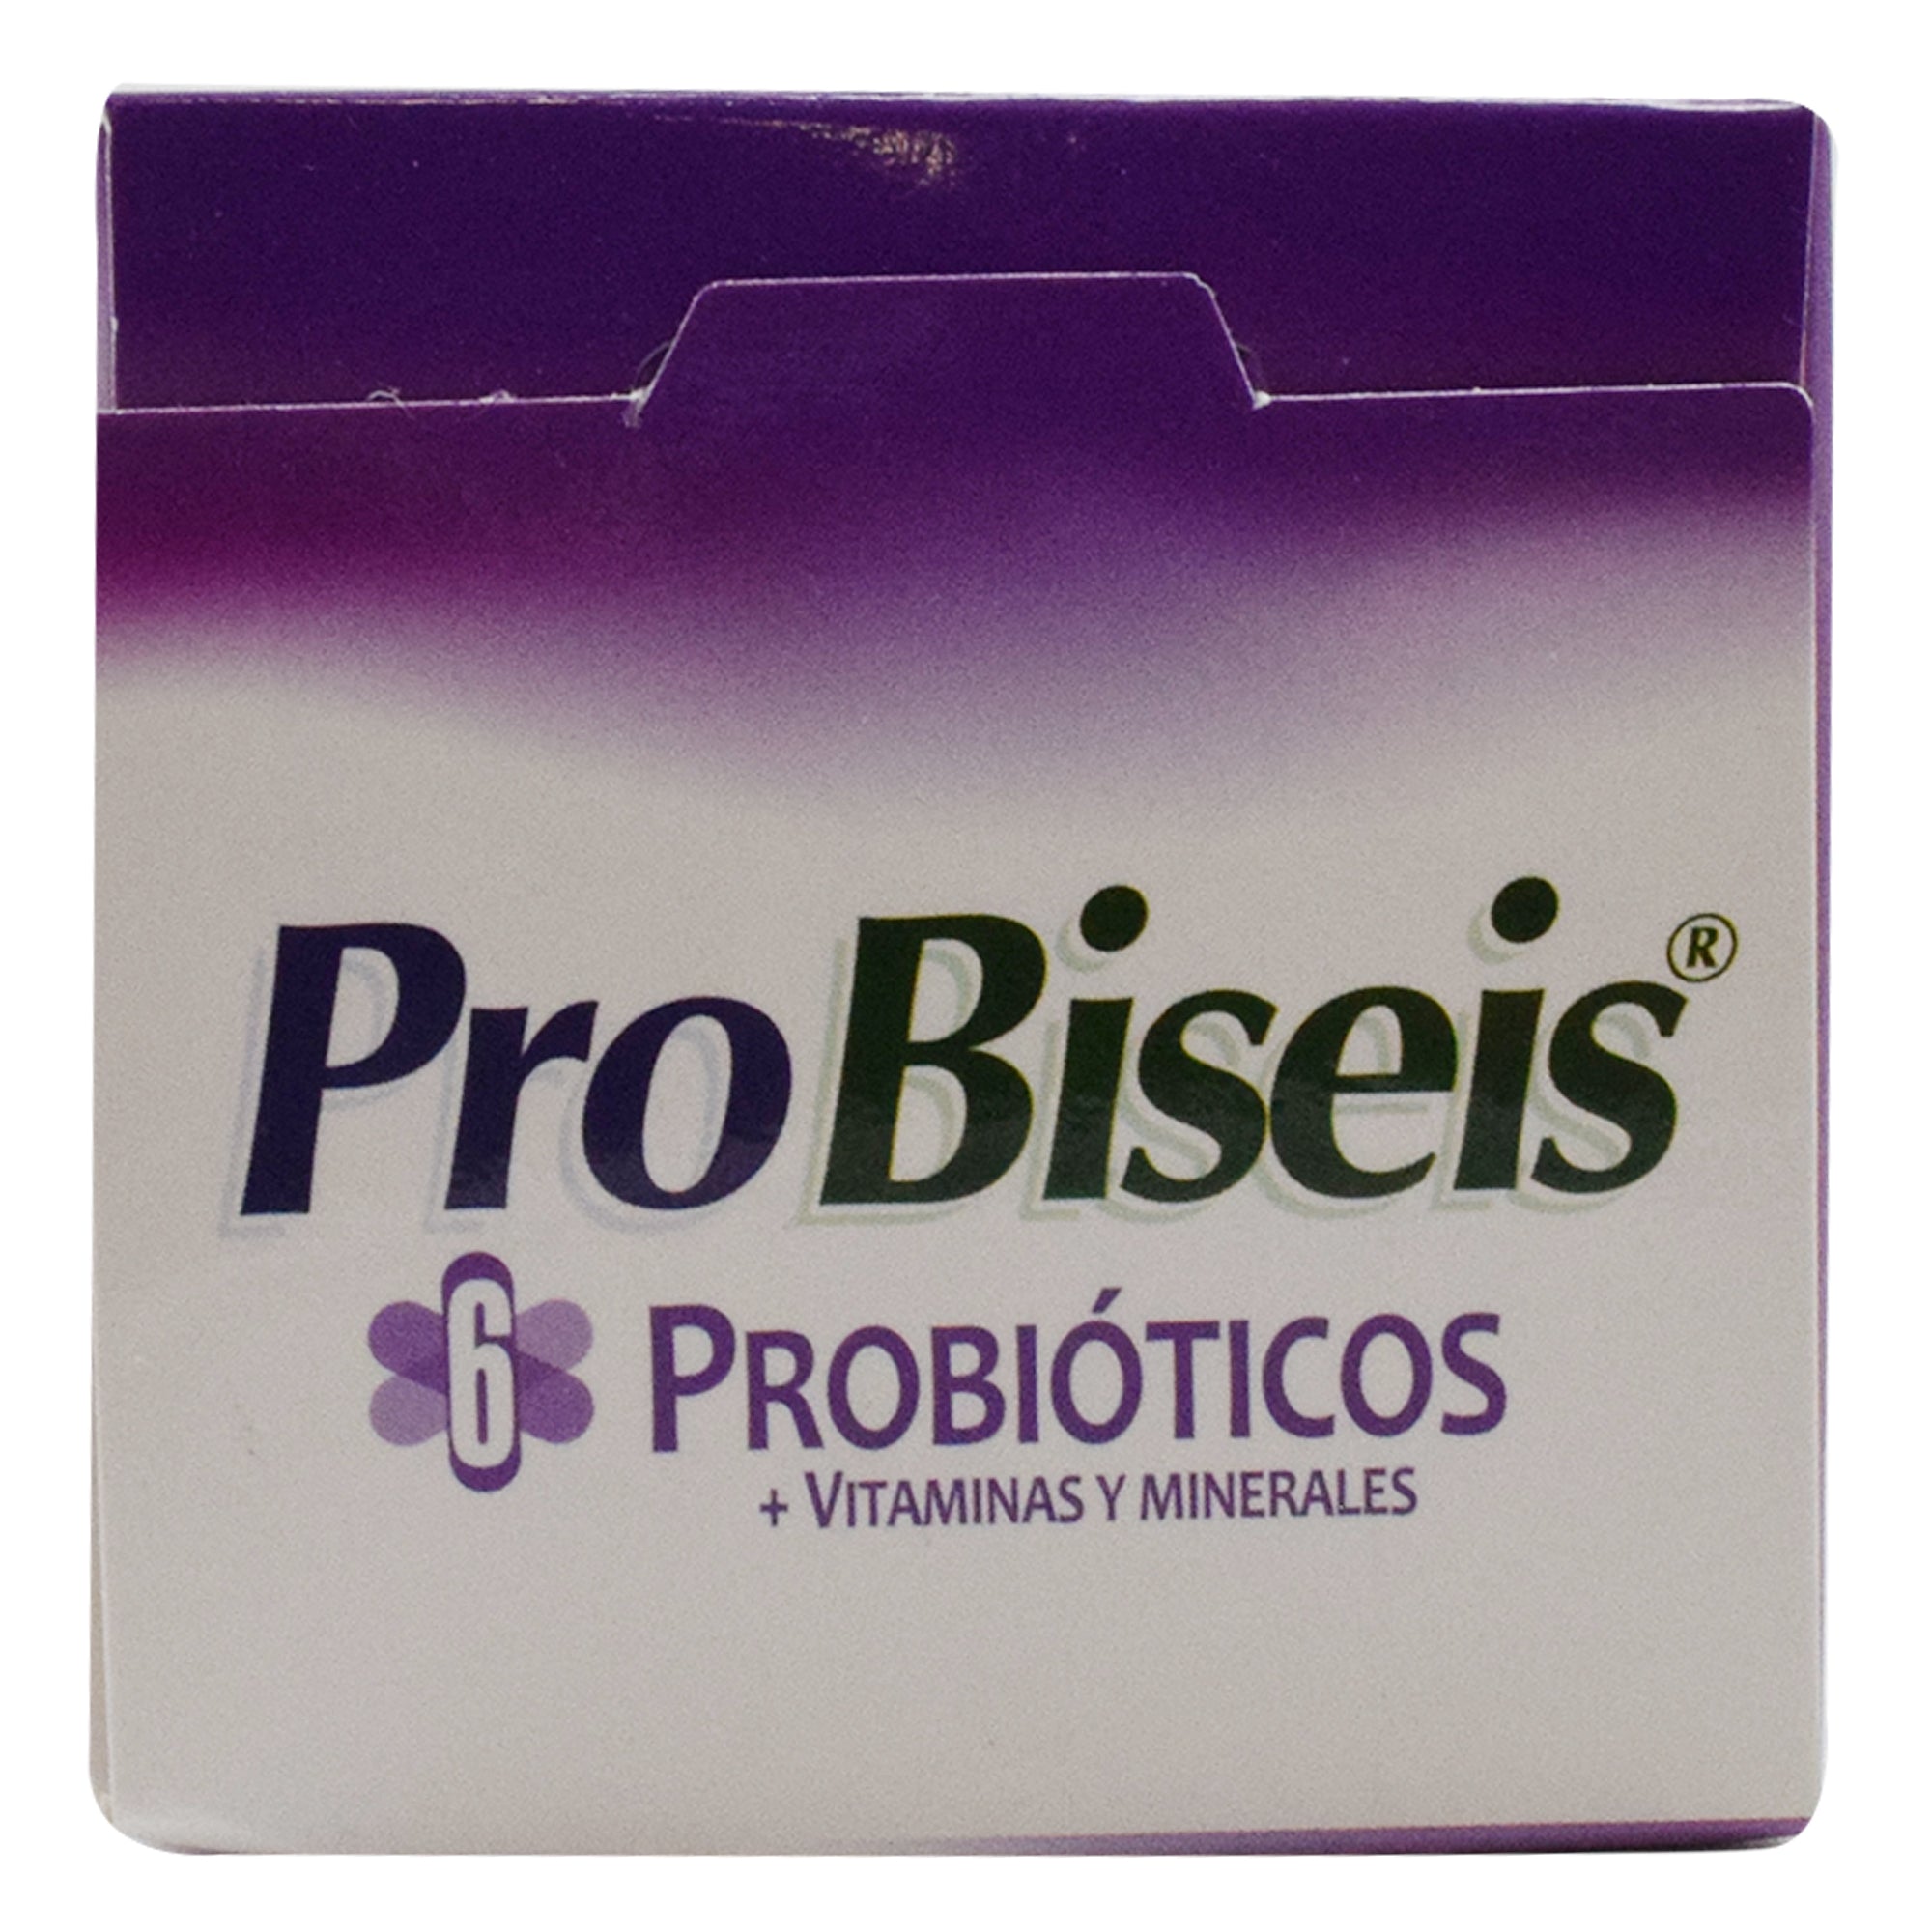 Pro biseis probioticos 60 cap